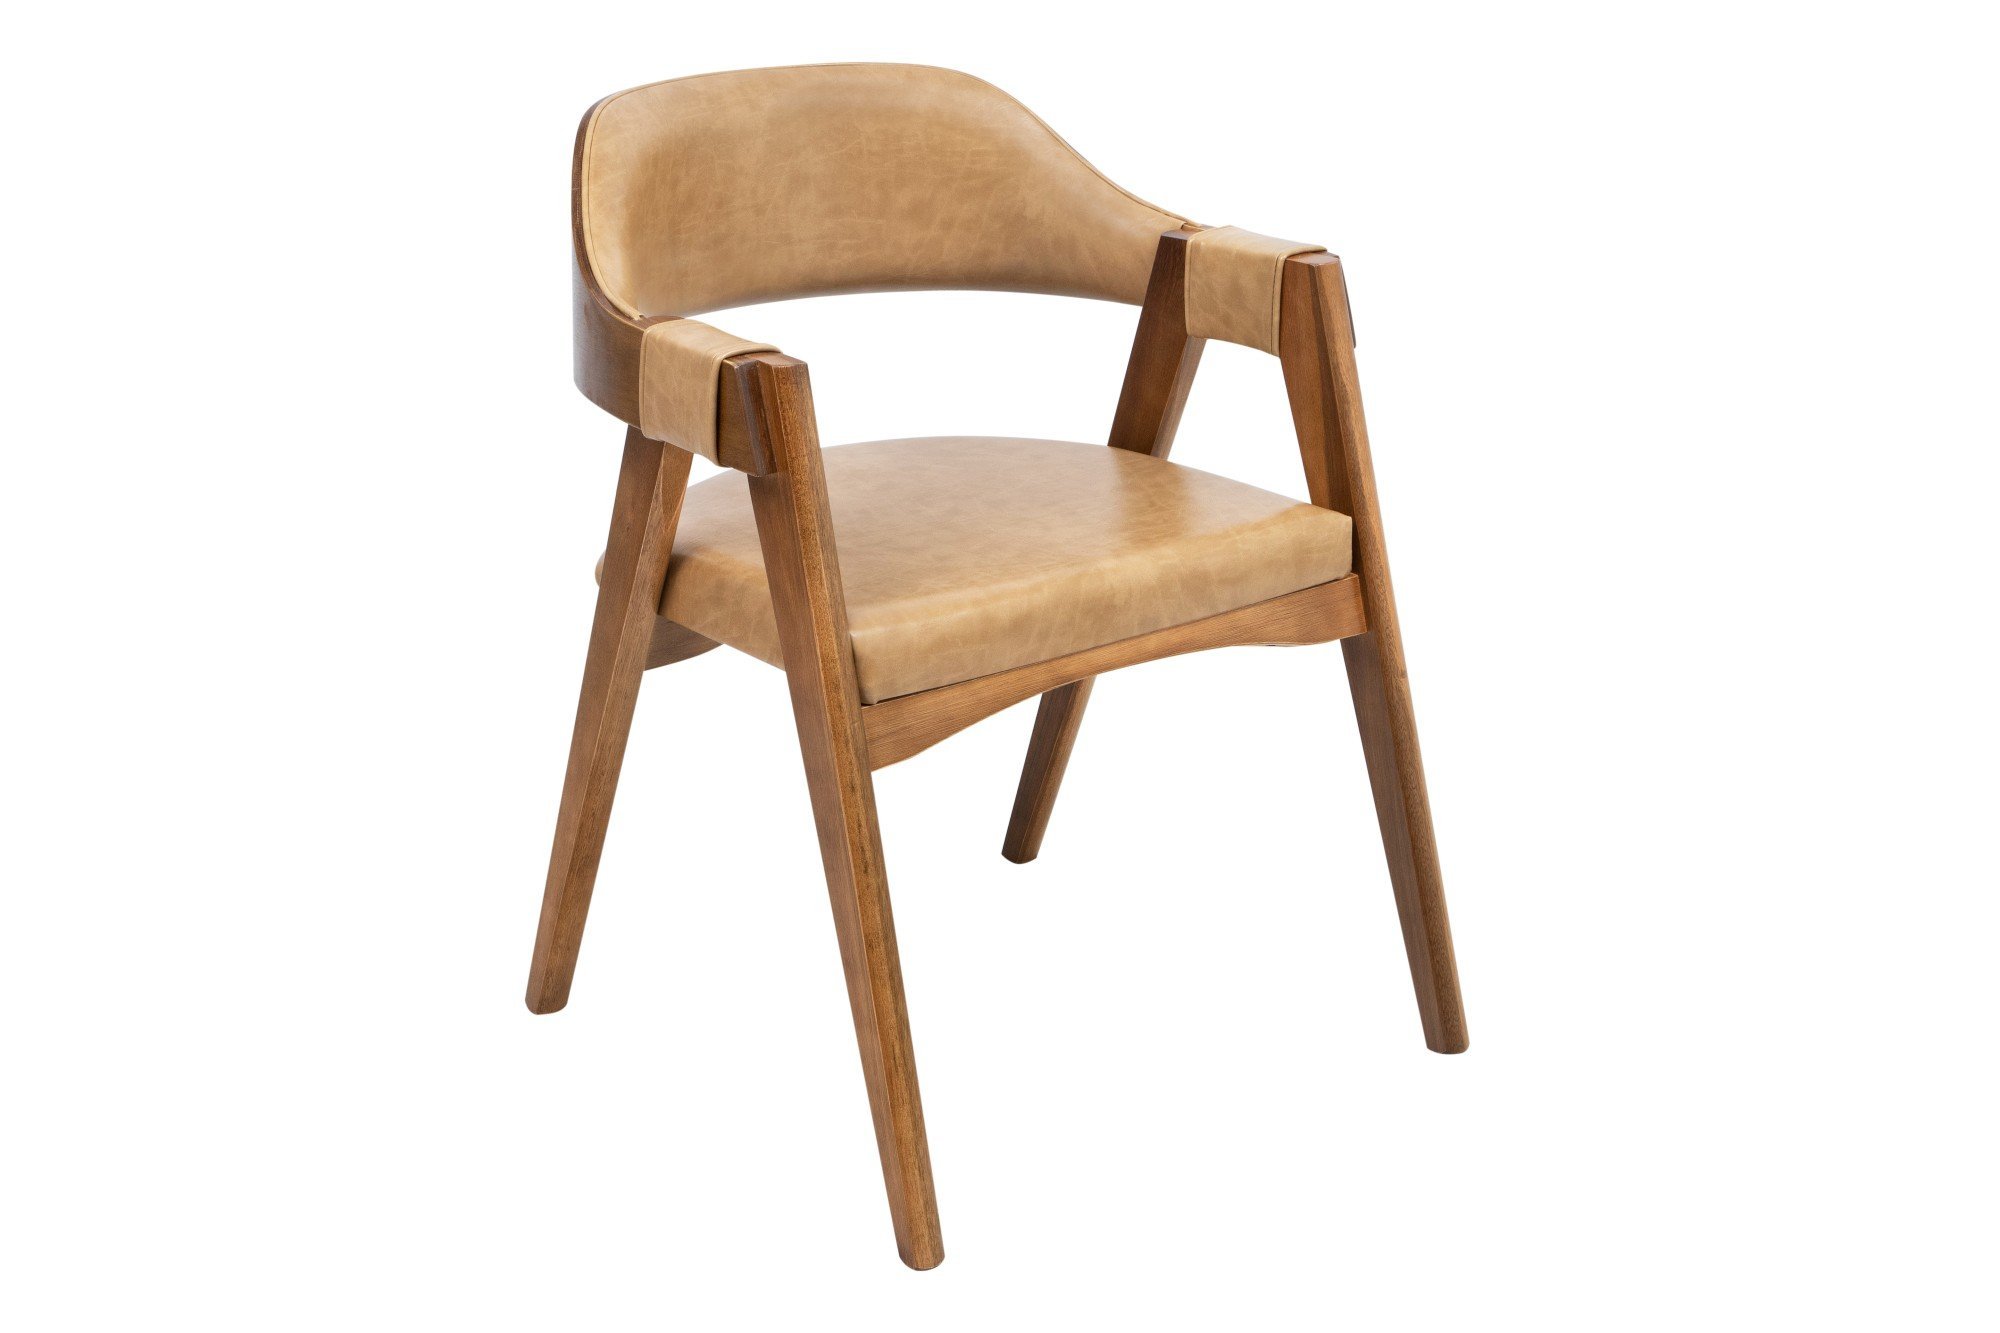 Cadeira Versalhes Madeira Cor Pinhão Estofada Moderna Tecido:Couro Ecológico Durango Kaki:Couro Ecol - 1